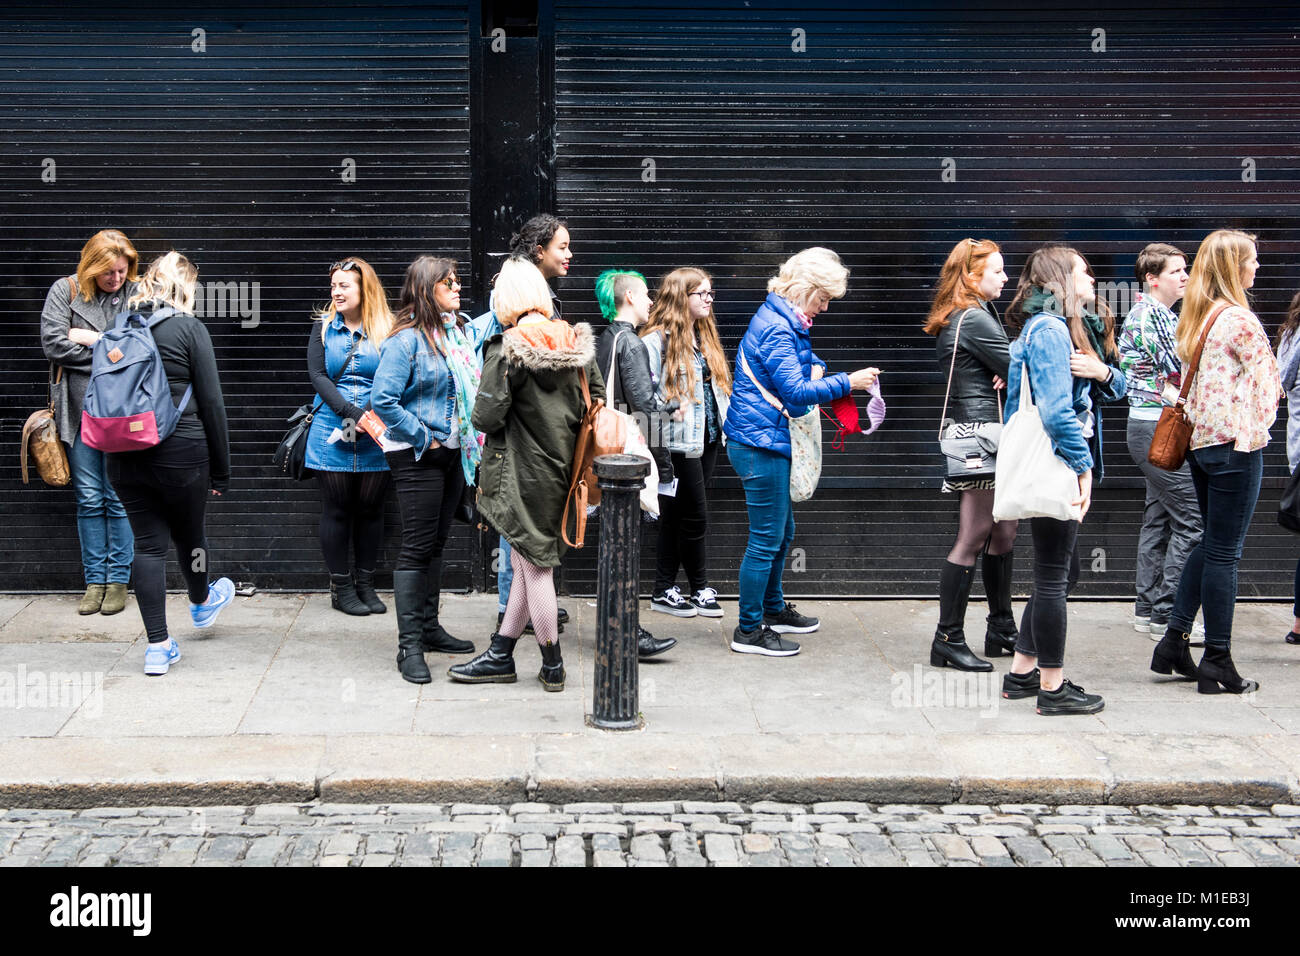 Frauen aufgereiht Aufhebung Sweatshirts im Indigo & Stoff Store am Tag der Rallye zu kaufen. Aufhebung der 8. Änderung der irischen Verfassung. Pro-choice (Abtreibung) Rallye in Dublin, Irland Stockfoto